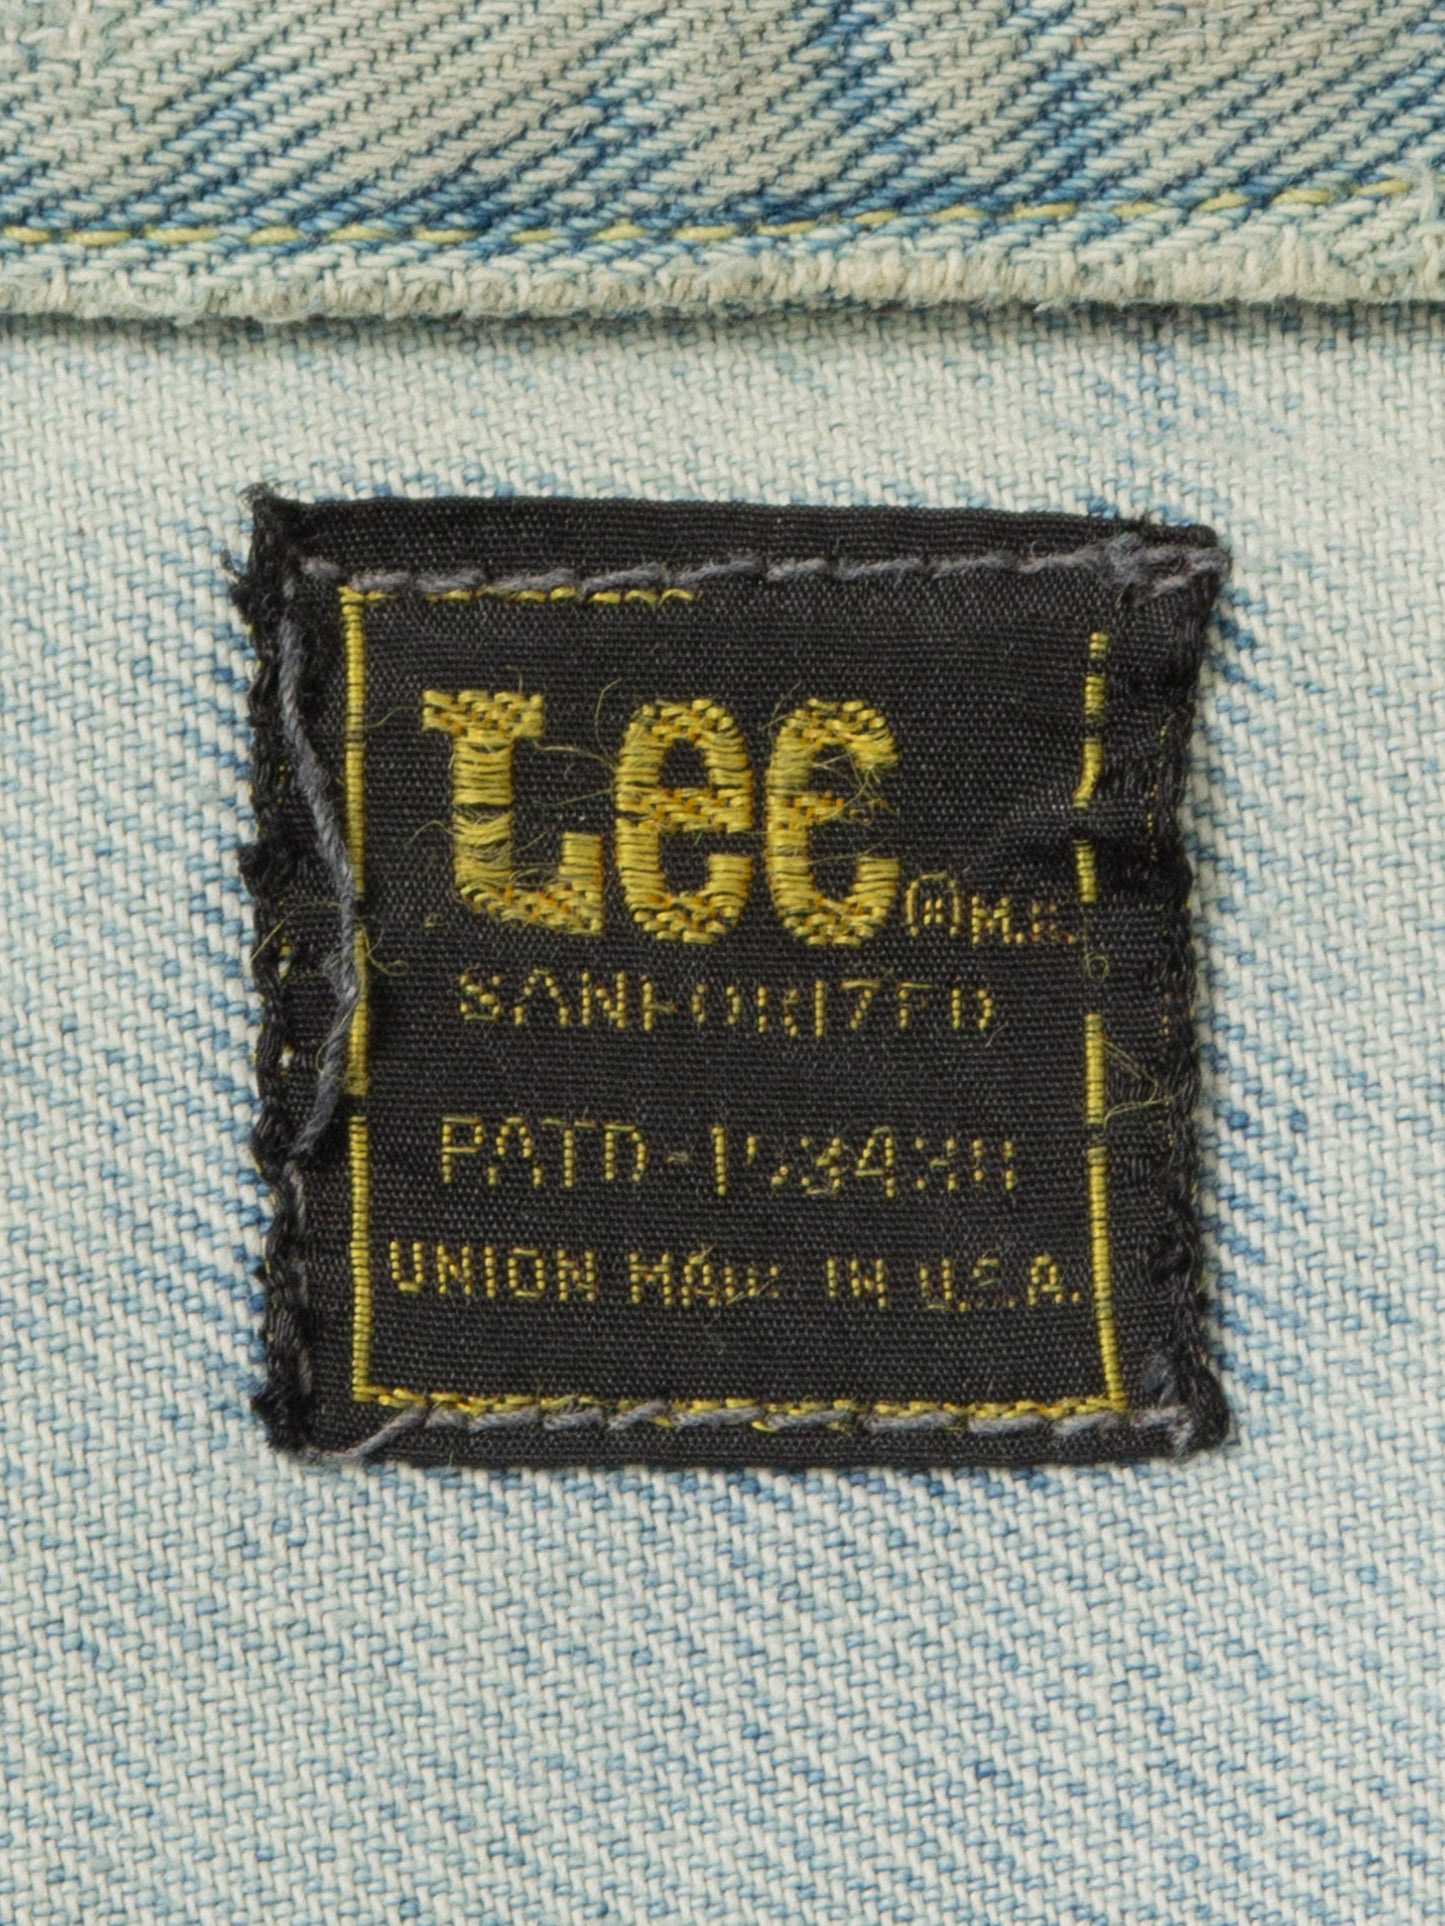 Vtg 1970s Patched Lee Cat-Eye Denim Jacket - Made in USA (L)